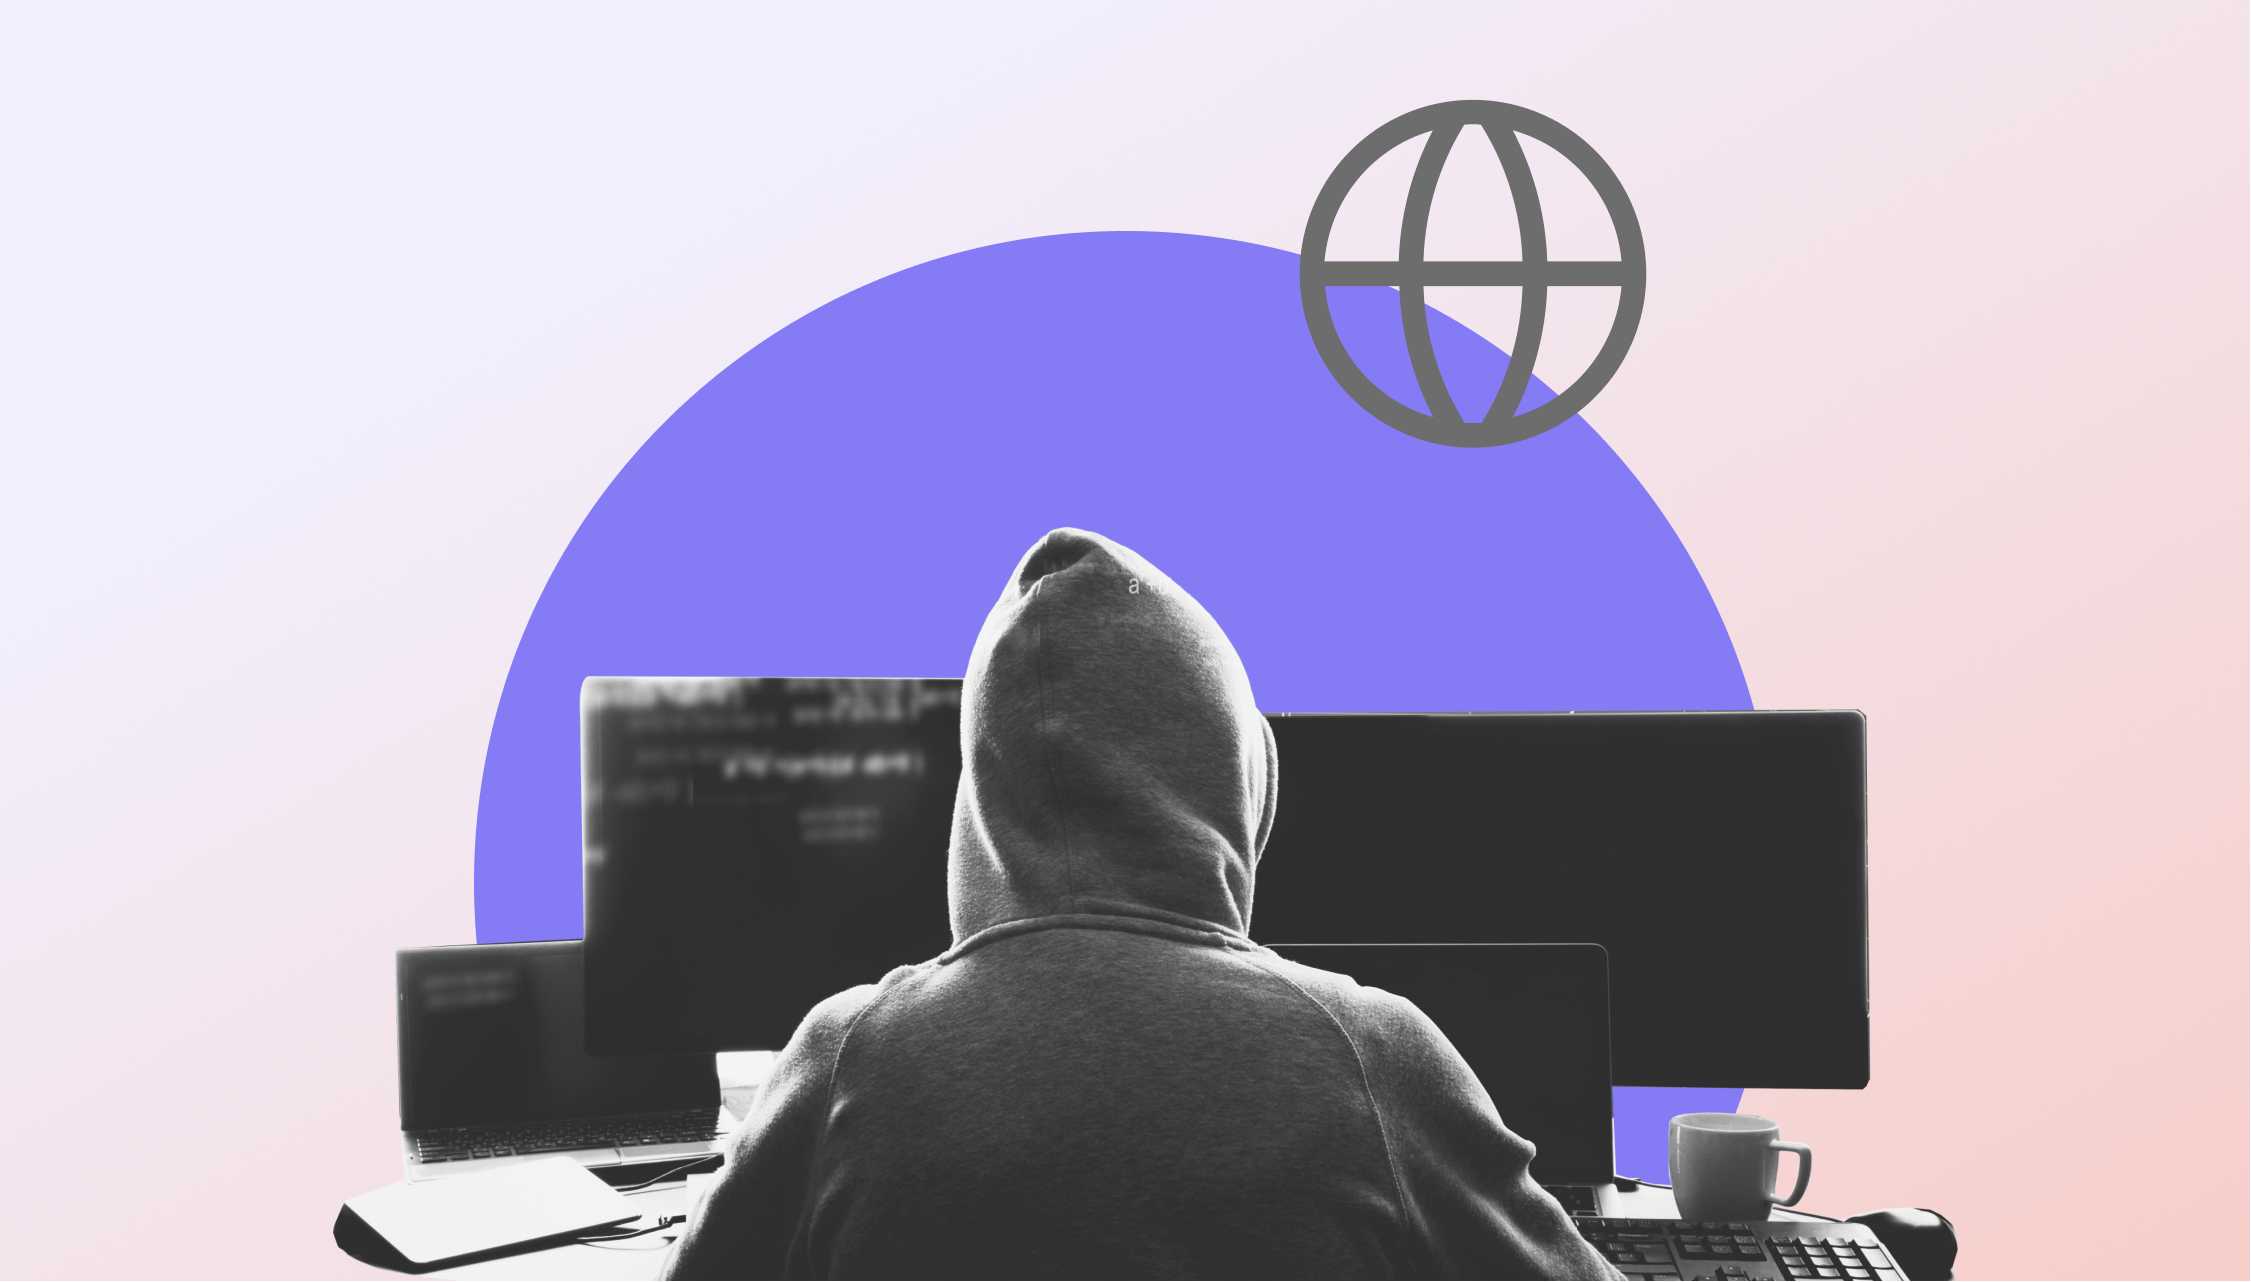 Mann mit Kapuze bei einer SAD DNS Attacke vor 3 Bildschirmen. Ein lila Kreis und ein Weltkugelicon ist noch im Hintergrund zu sehen.